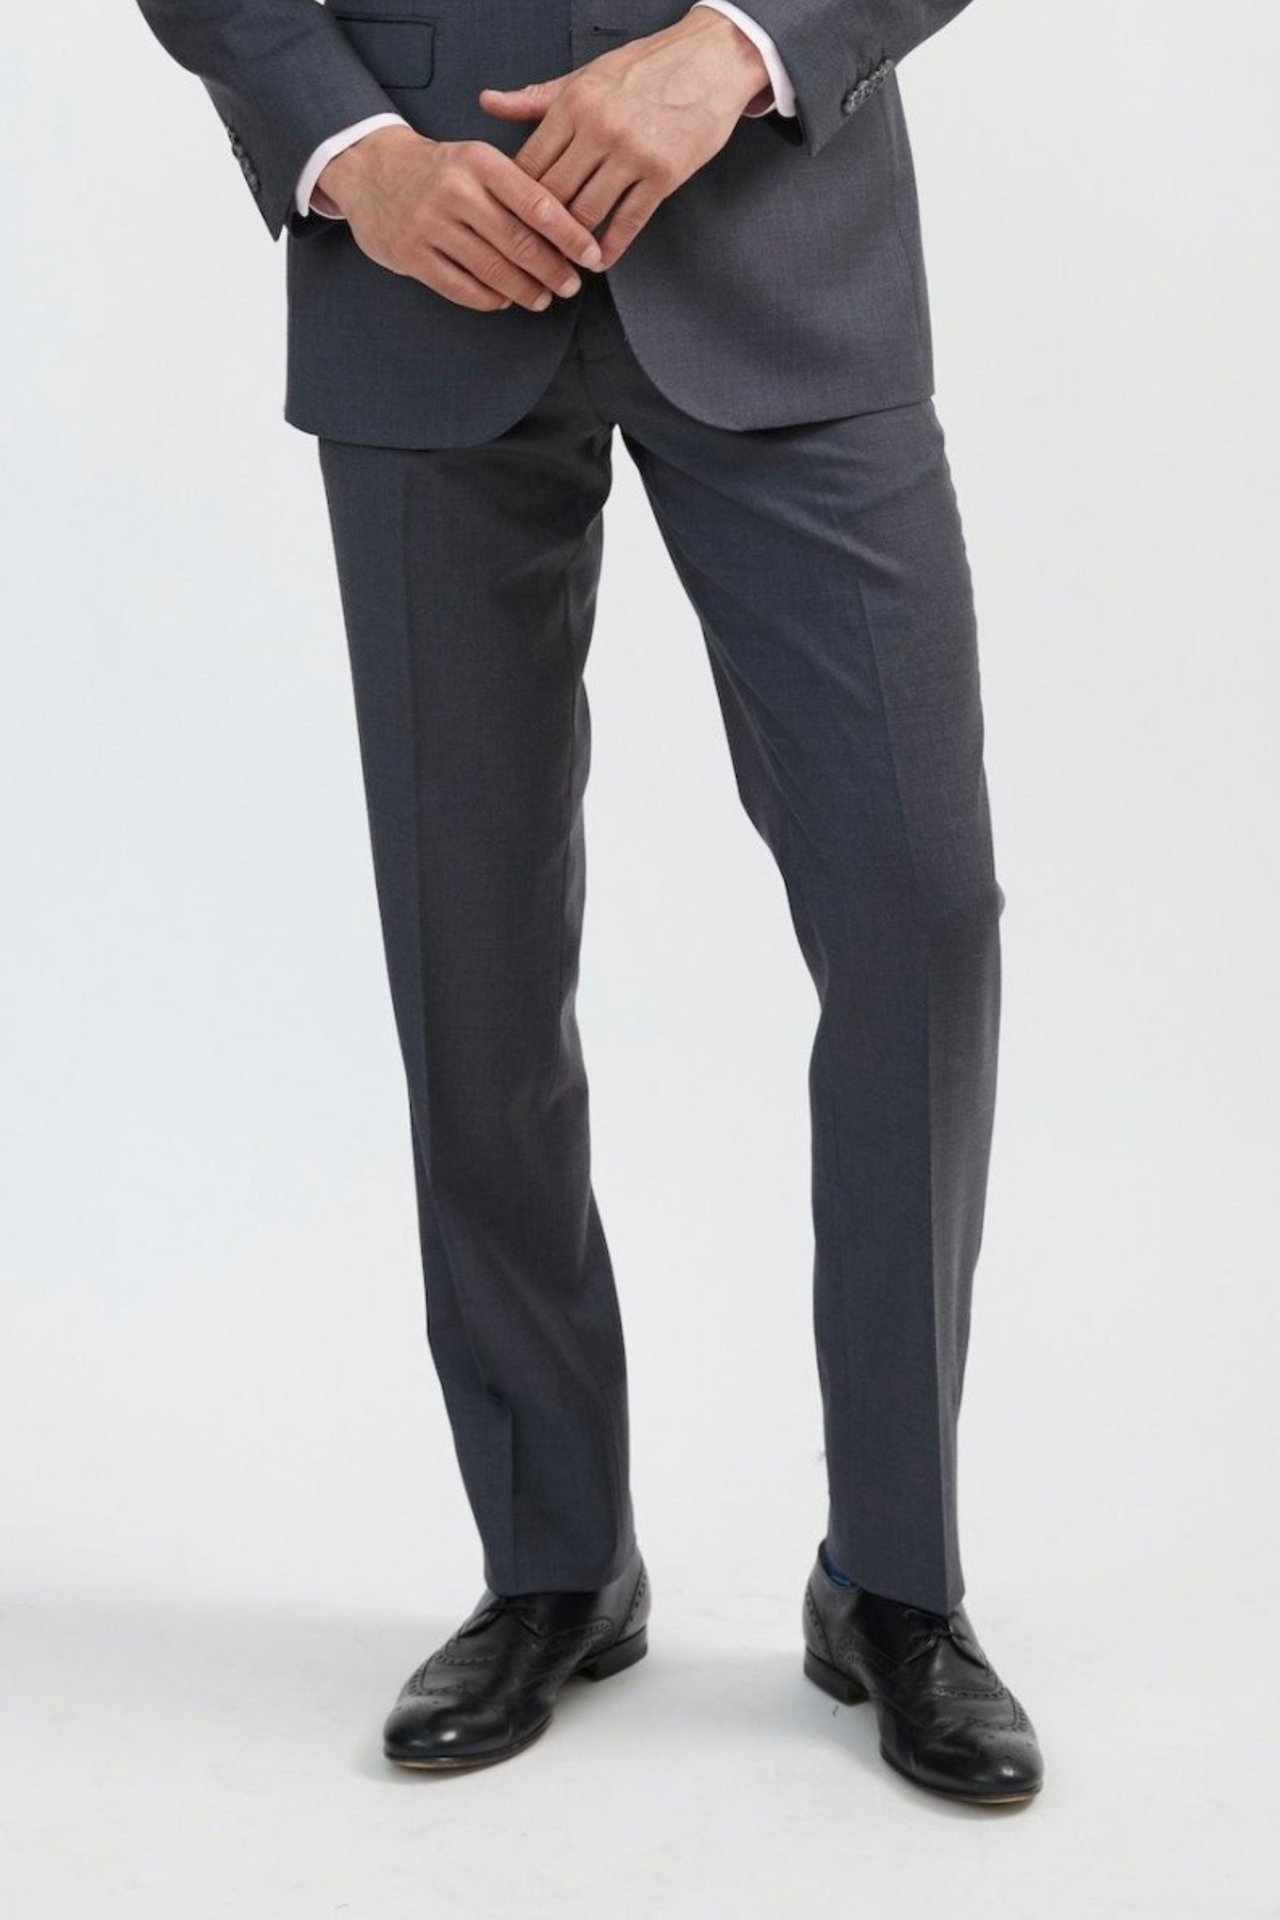 dark gray mens dress pants men casual versatile fashion stretch pants soild  color slim fit small feet suit trousers - Walmart.com